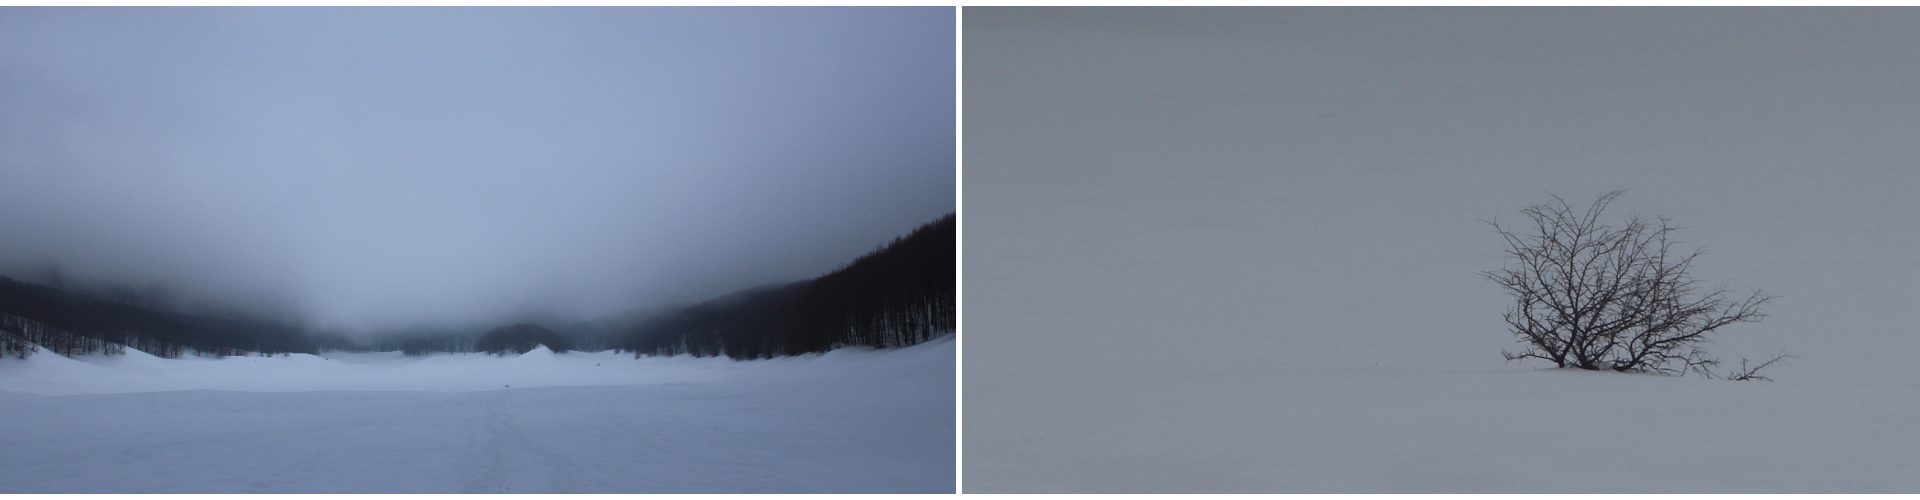 Distesa di ghiaccio e nebbia del “pianellone”tentando di raggiungere la cima del “Gallinola”.
Albero quasi totalmente sommerso dalla grande quantità di neve,con nebbia che lascia vedere ben poco in lontananza. Pianellone.